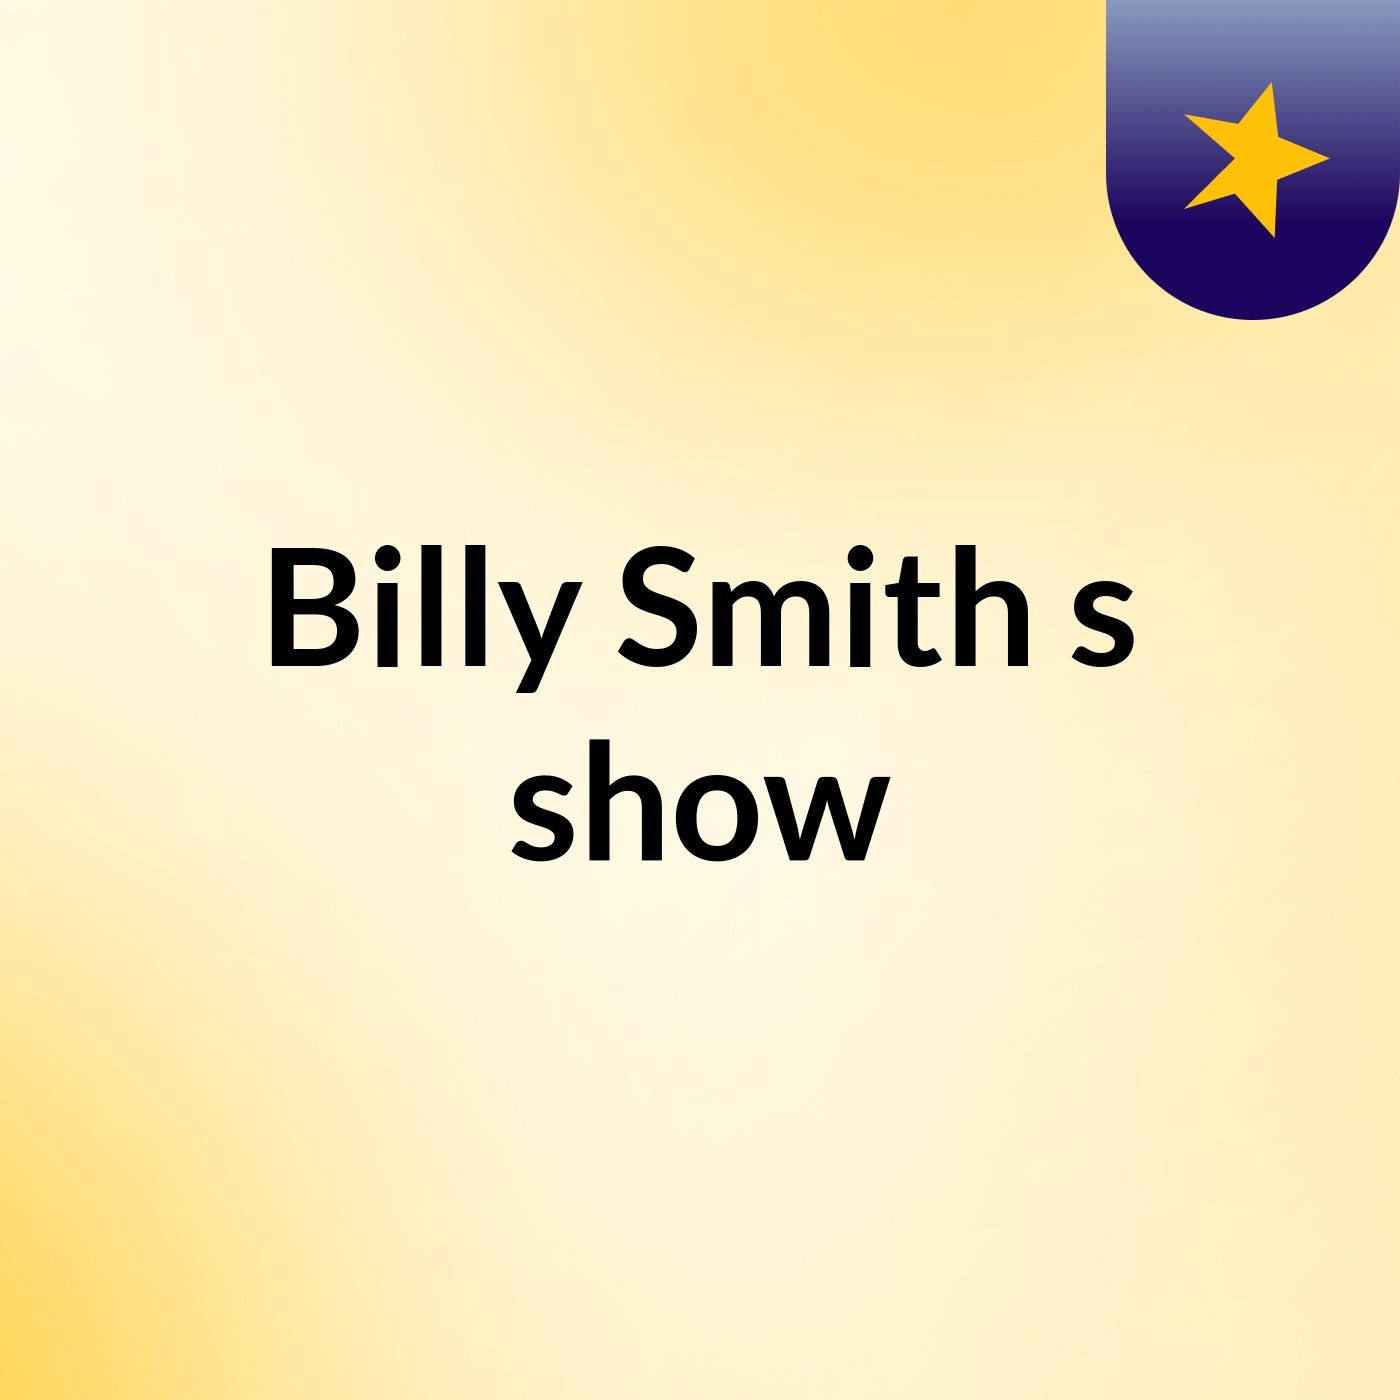 Billy Smith's show